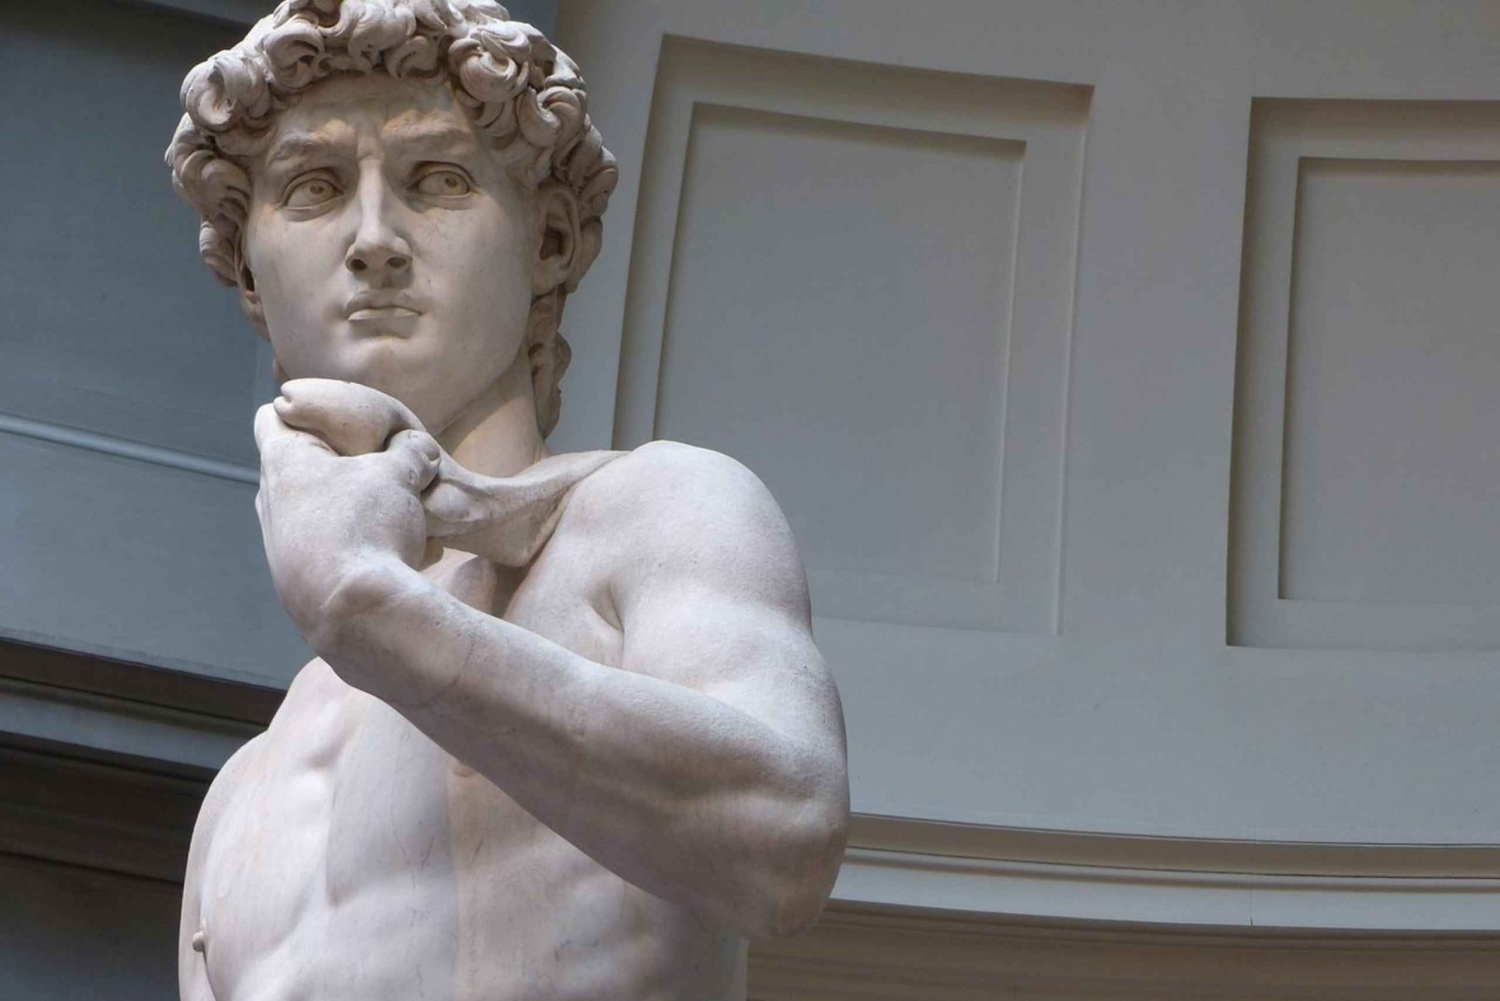 Firenze: tour per bambini con la statua del David di Michelangelo